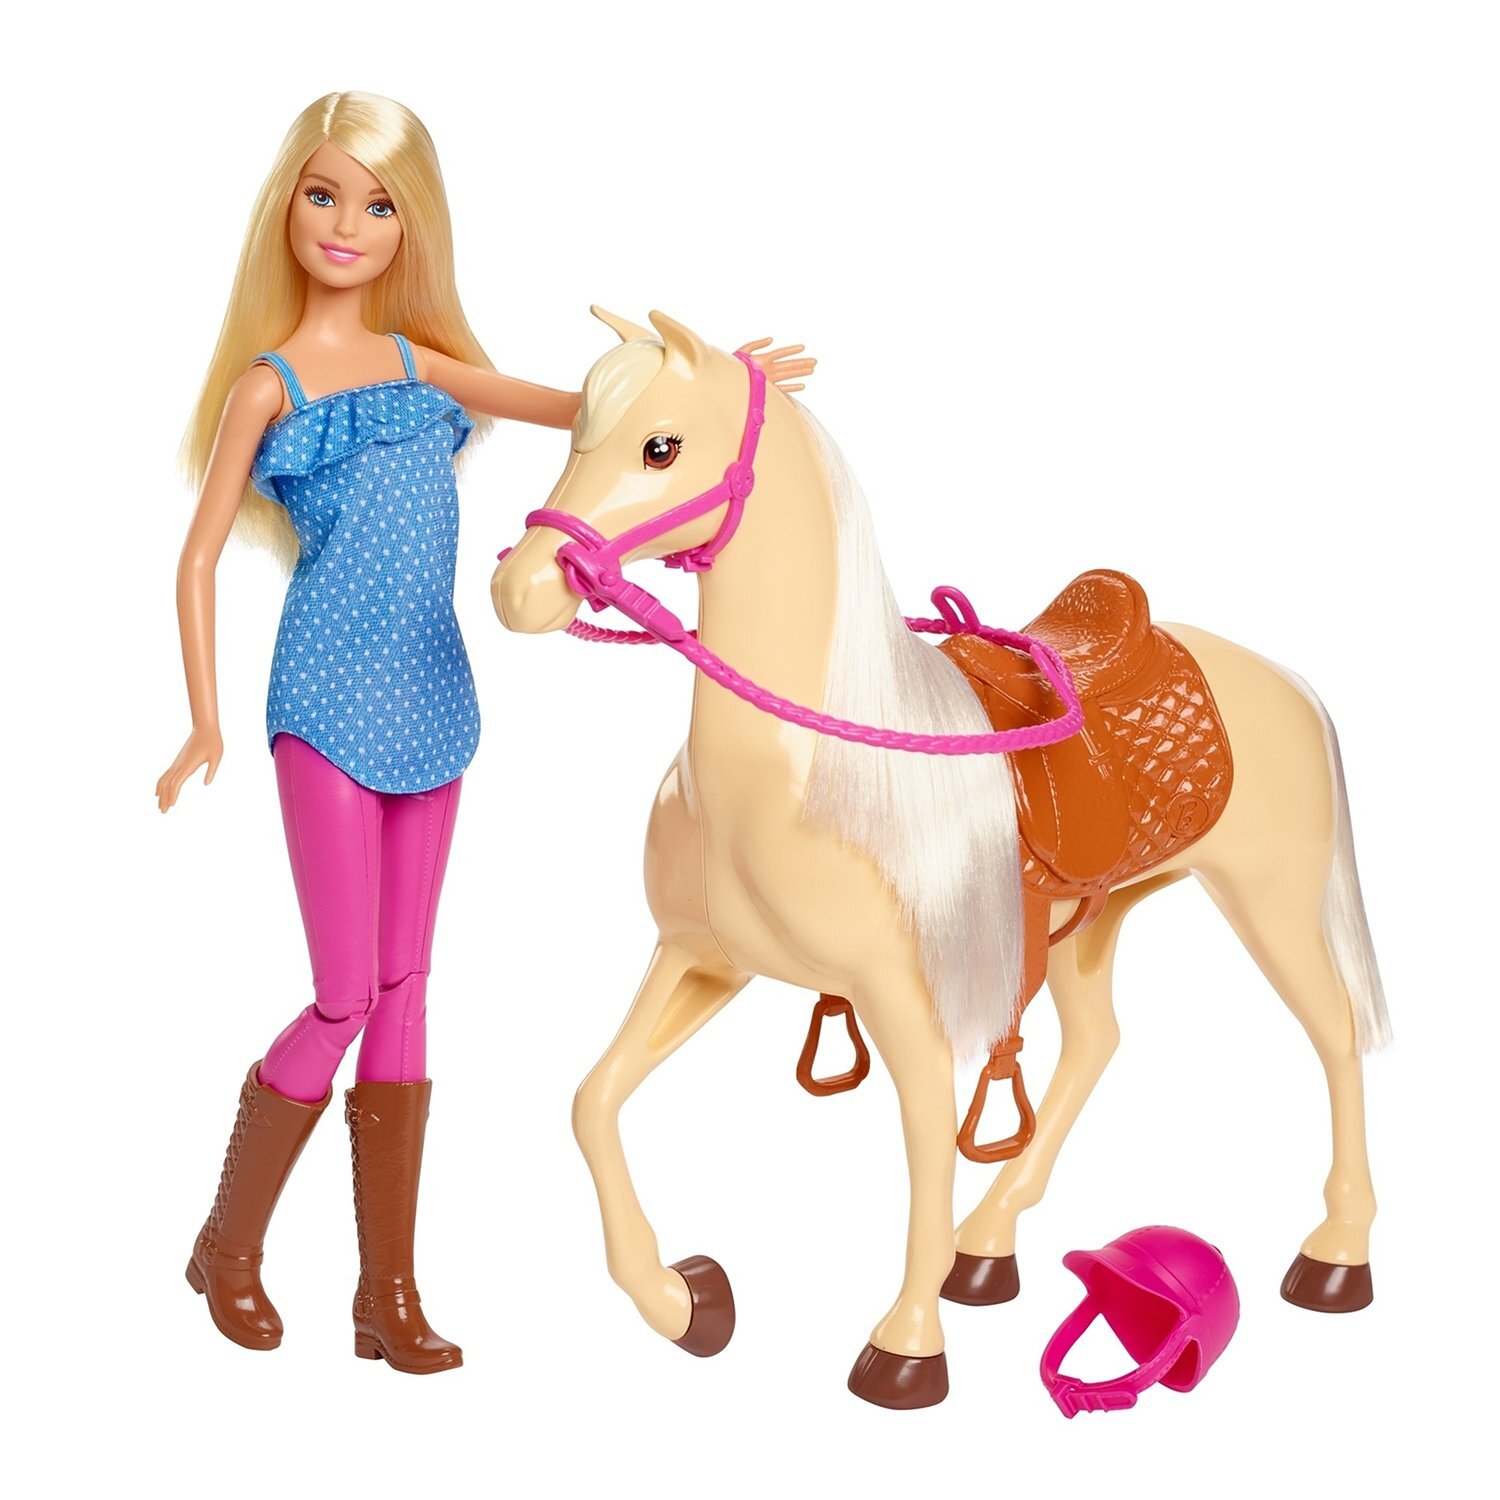 Игрушка барби купить. Кукла Barbie с лошадью, fxh13. Игровой набор Barbie наездница с лошадью fxh13. Набор Barbie с лошадью, dhb68. Кукла Барби наездница с лошадью.